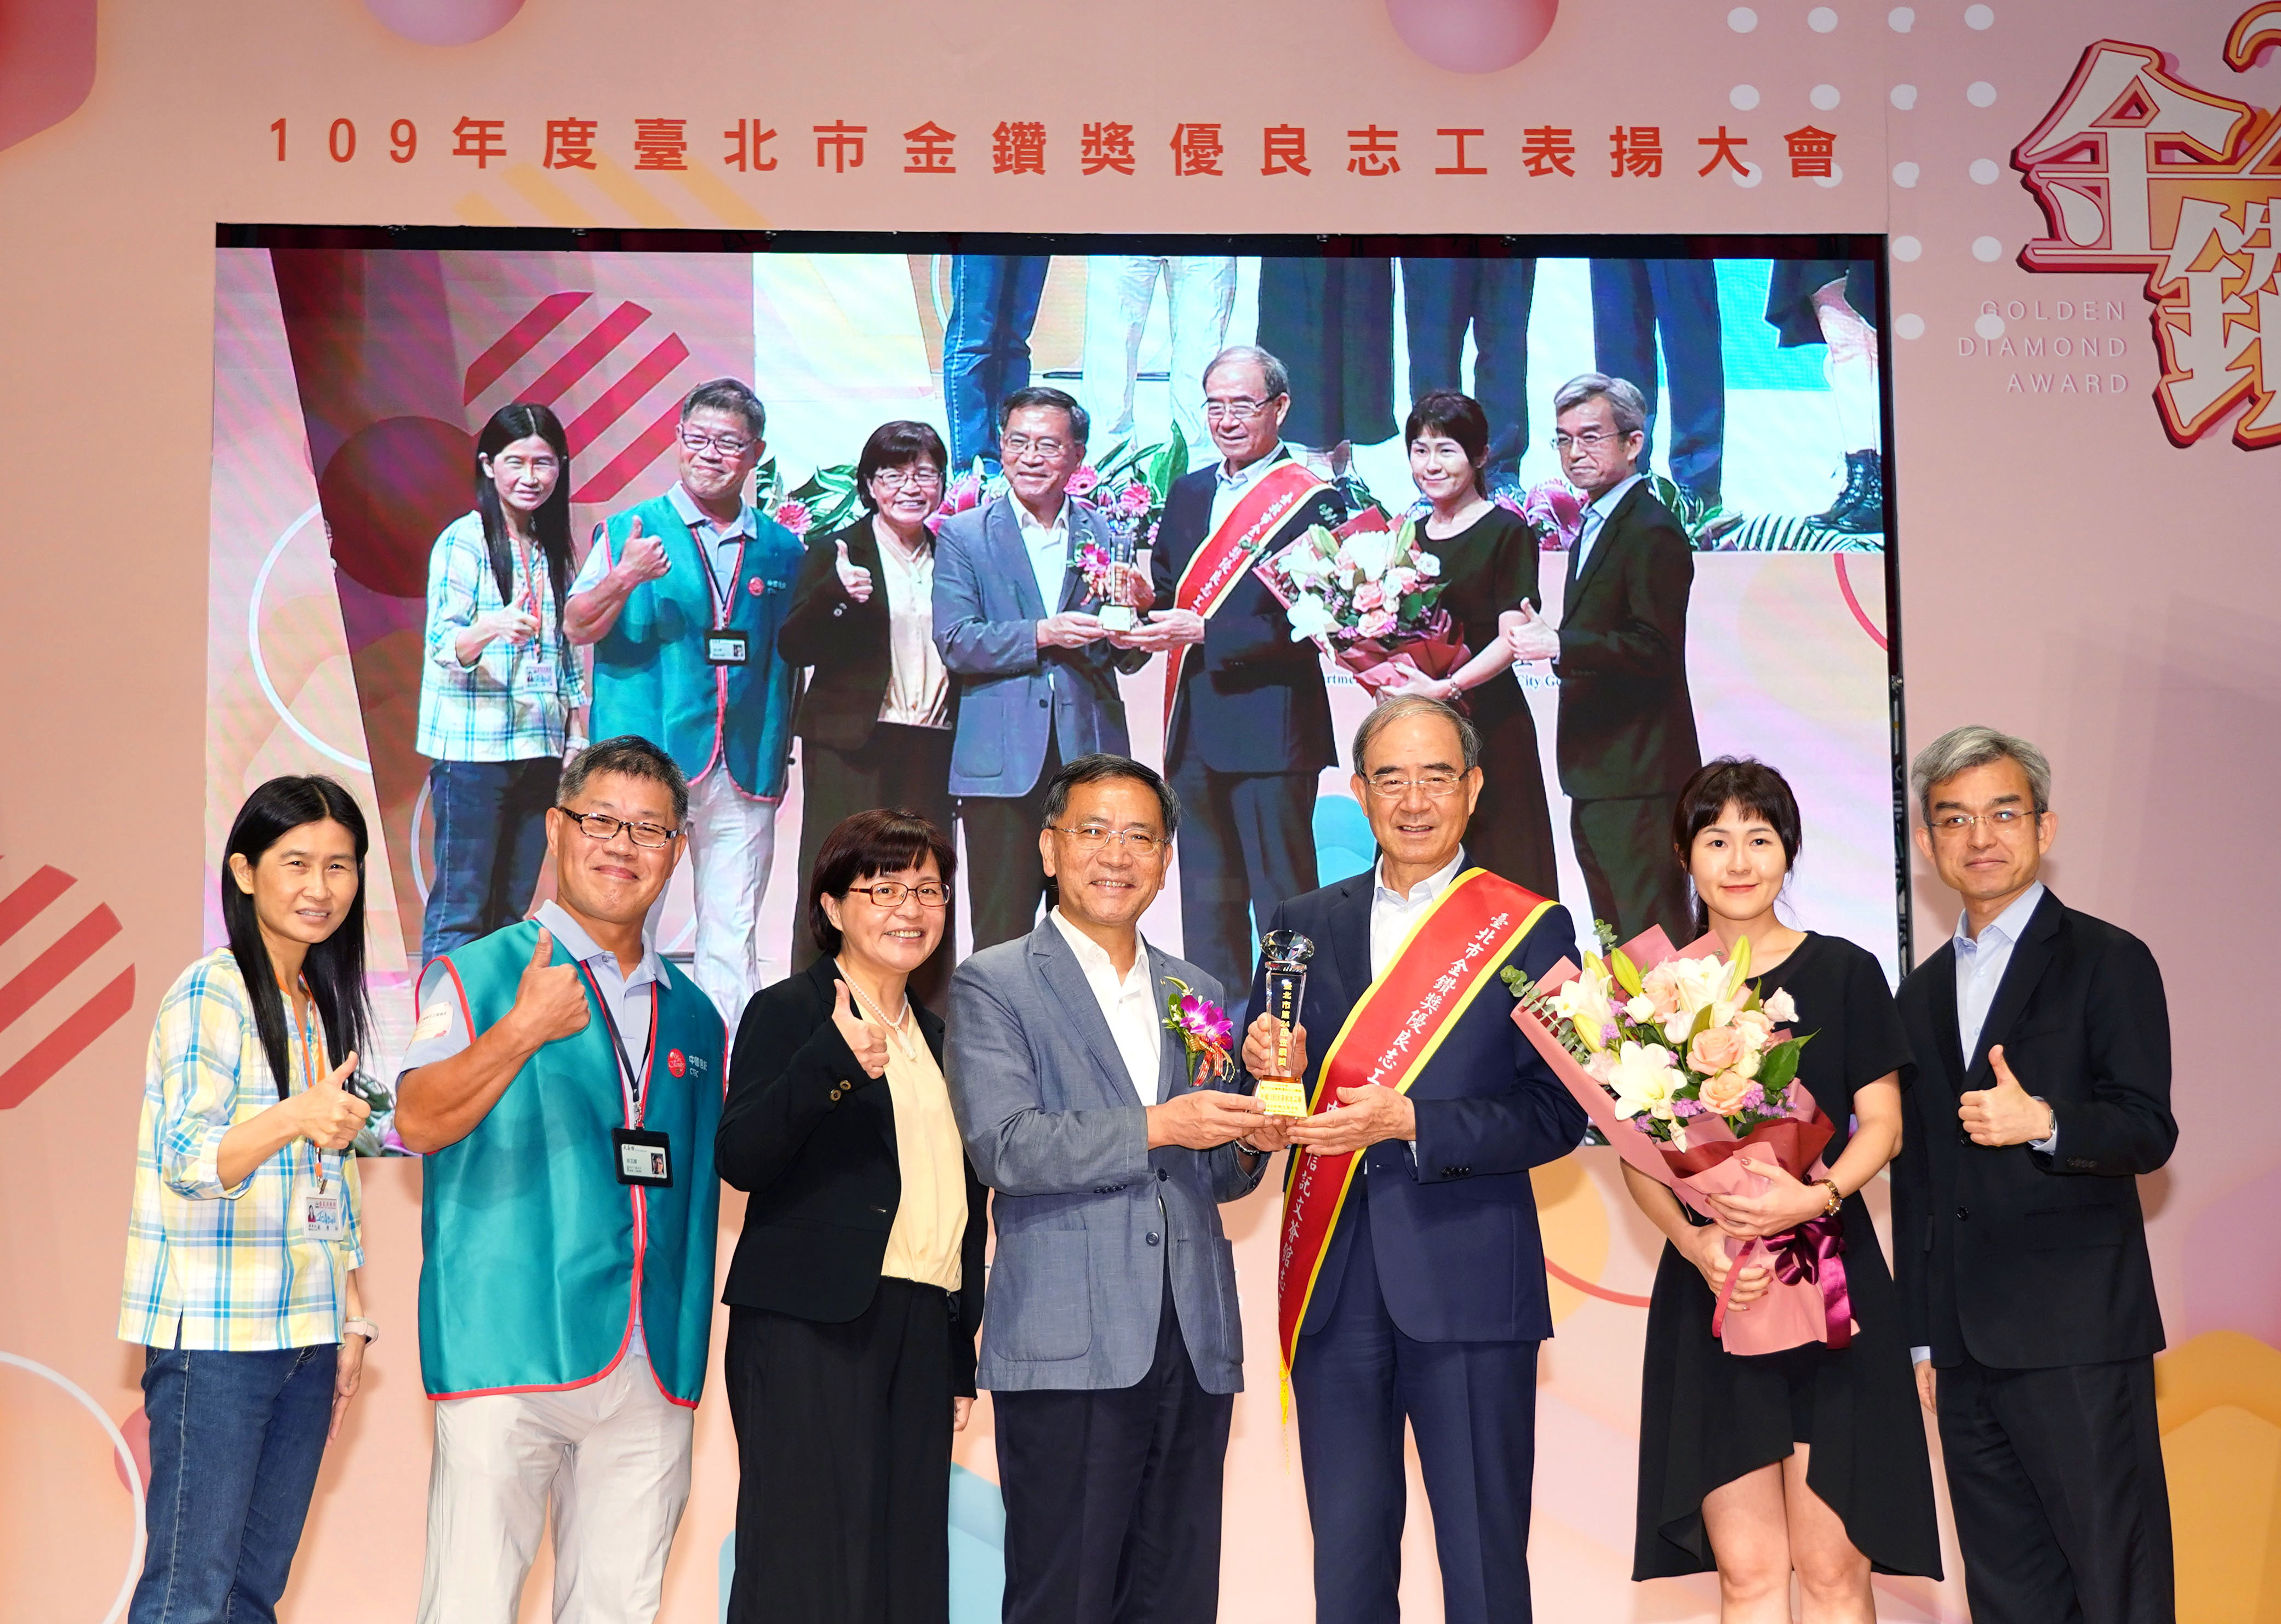 文薈館志工隊榮獲今年度台北市政府頒發的「金鑽獎 優良志工團隊獎」